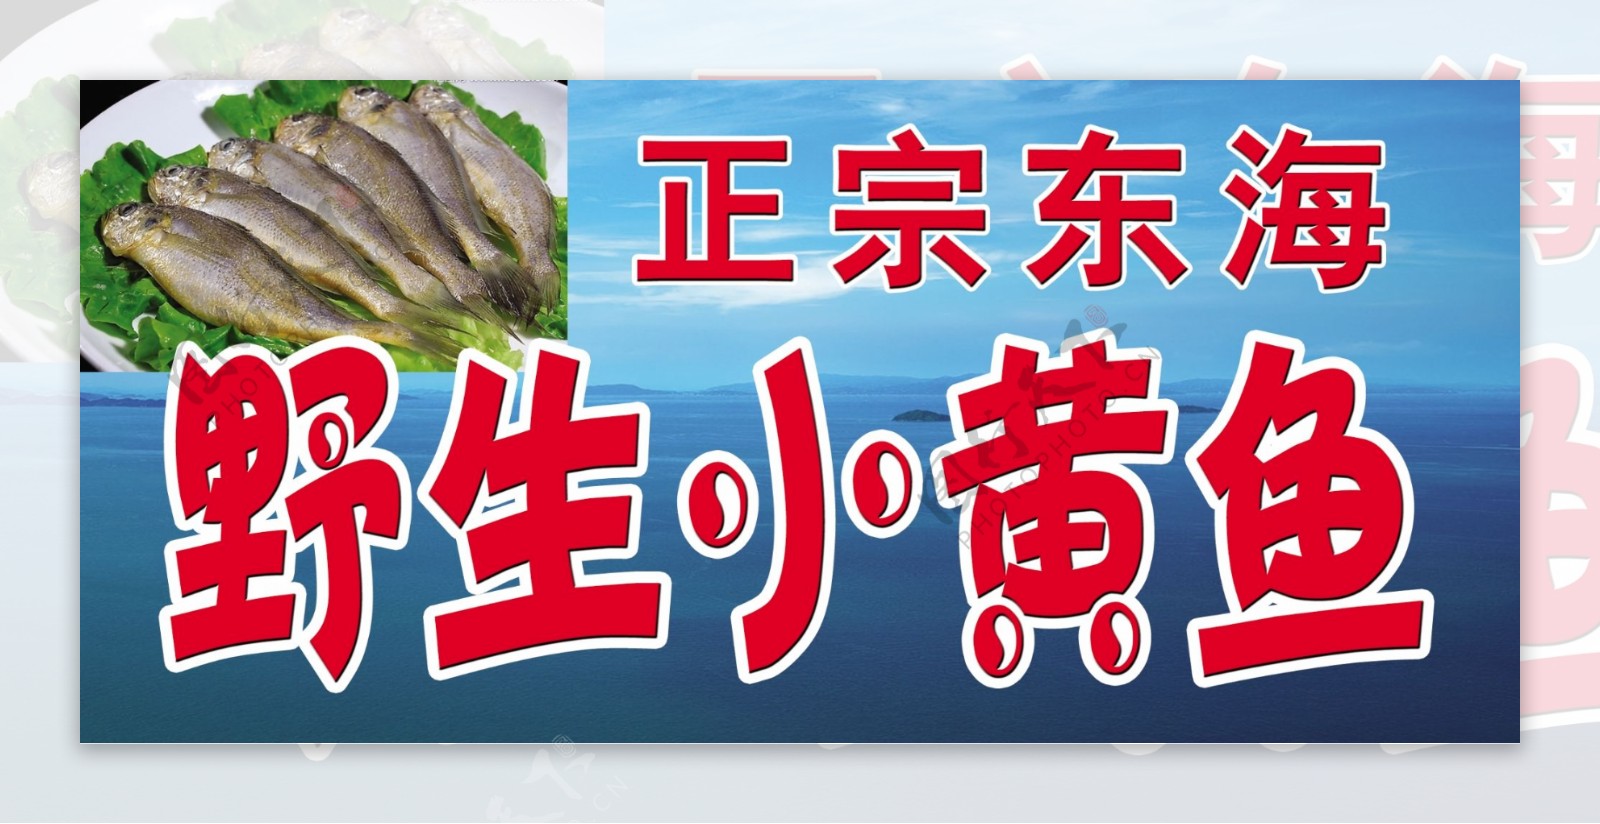 东海野生小黄鱼图片